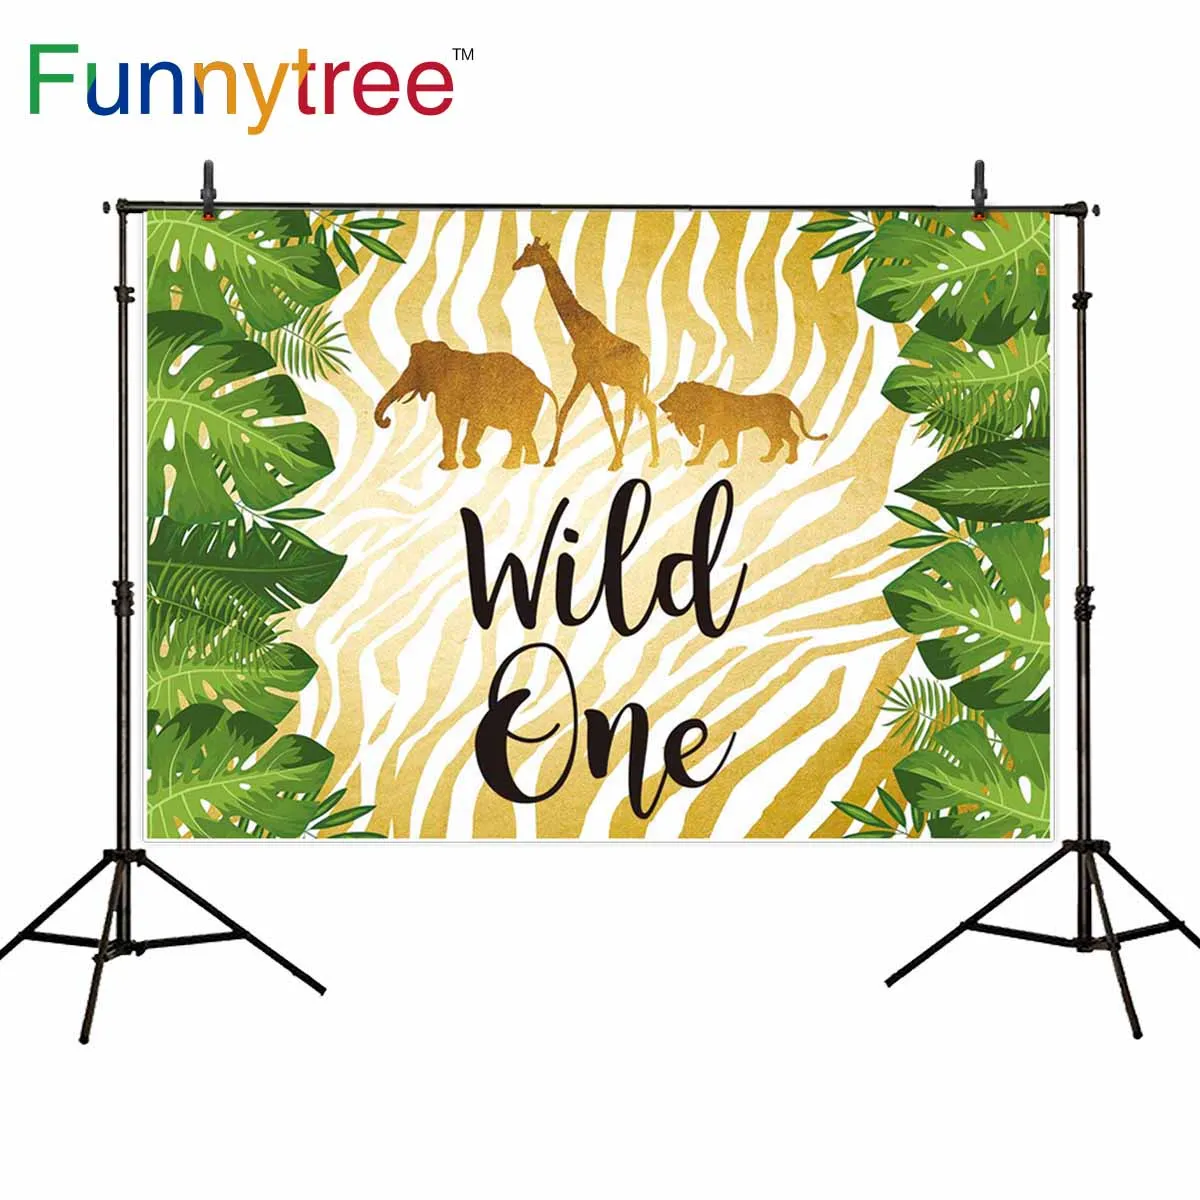 

Фоны funnytree для фотостудии с животным узором wild one для вечеринки в стиле сафари фон с листьями фотобудка для фотосессии реквизит